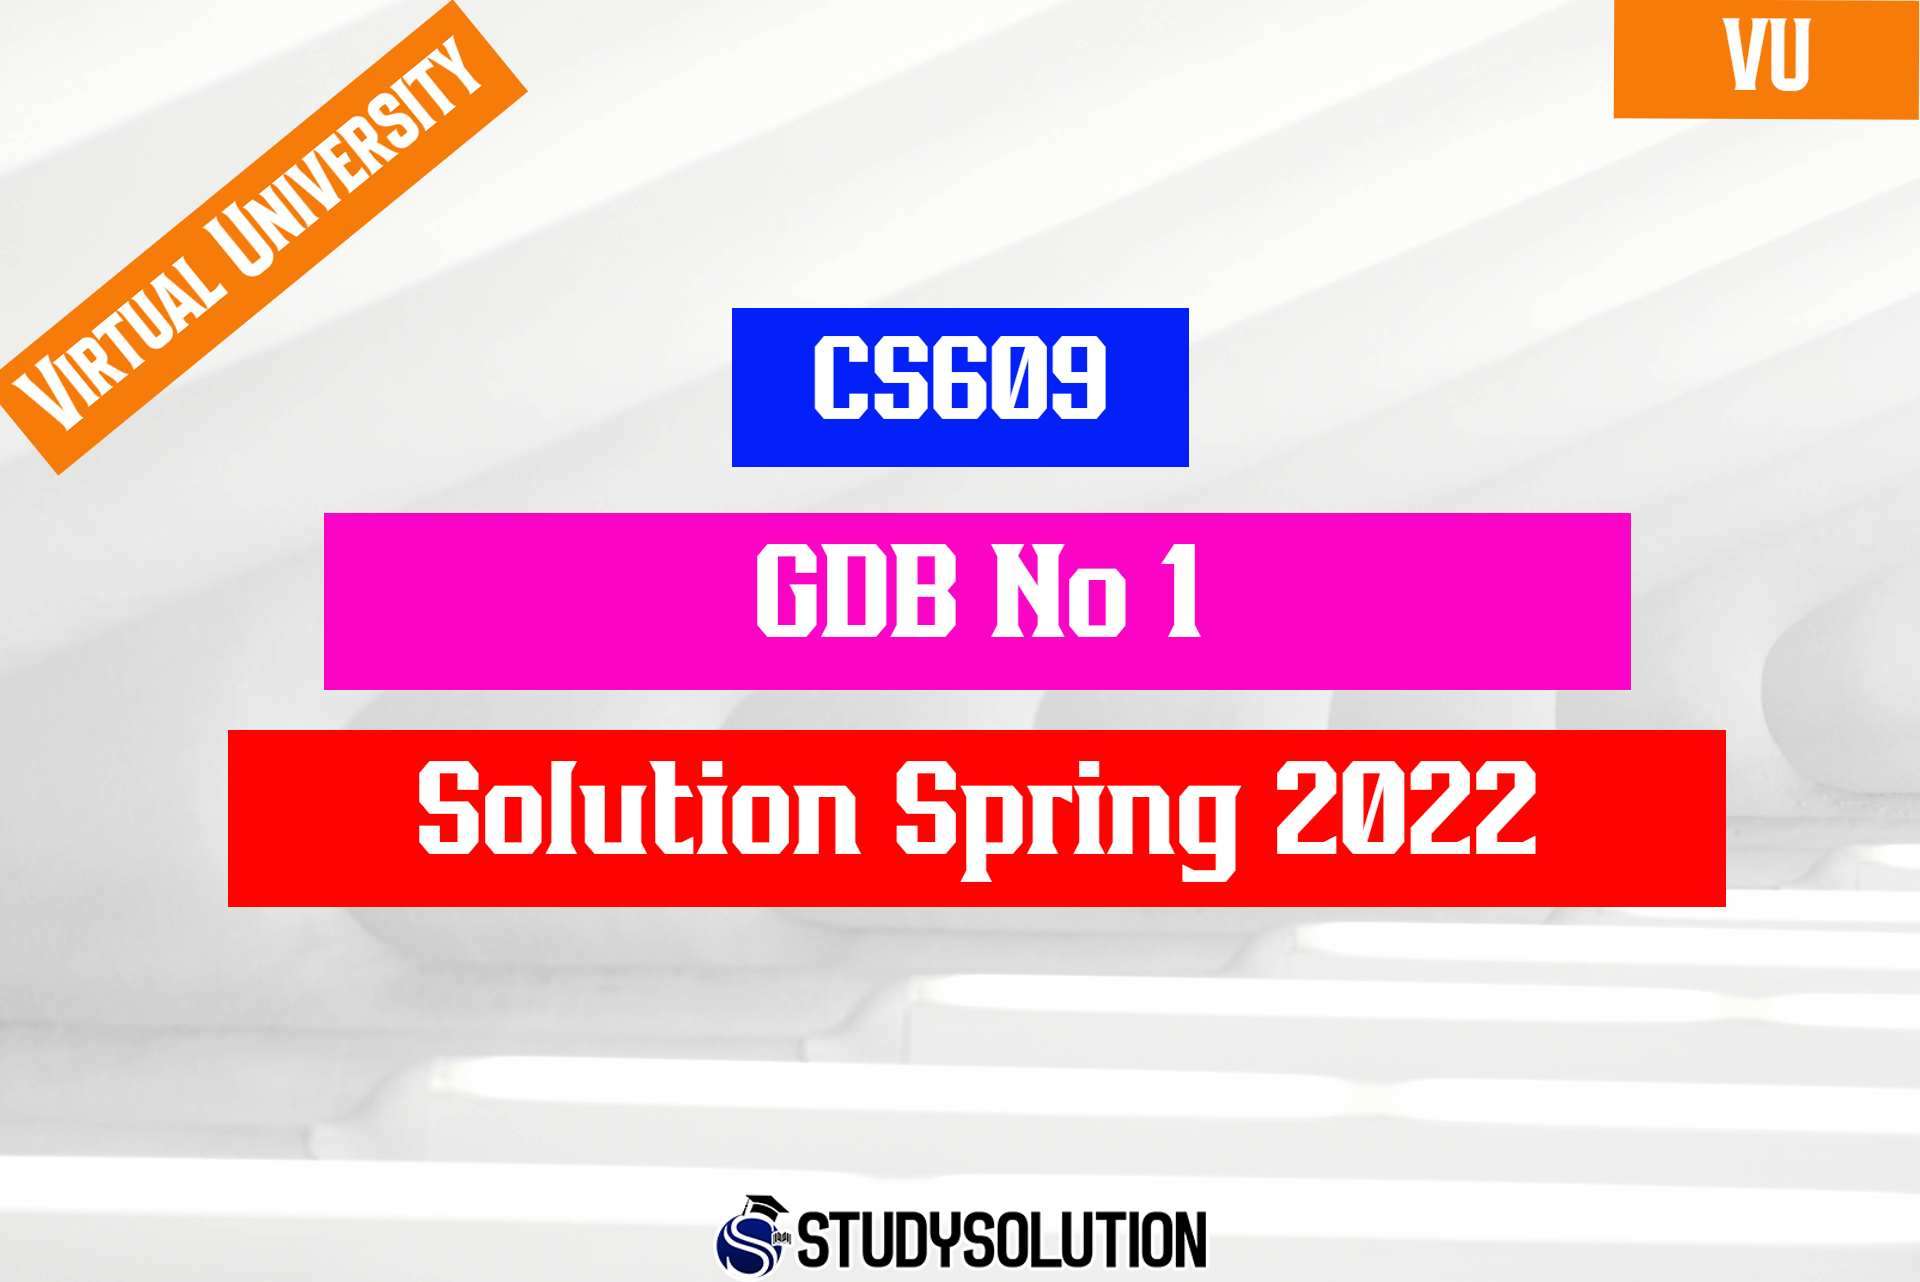 CS609 GDB No1 Solution Spring 2022